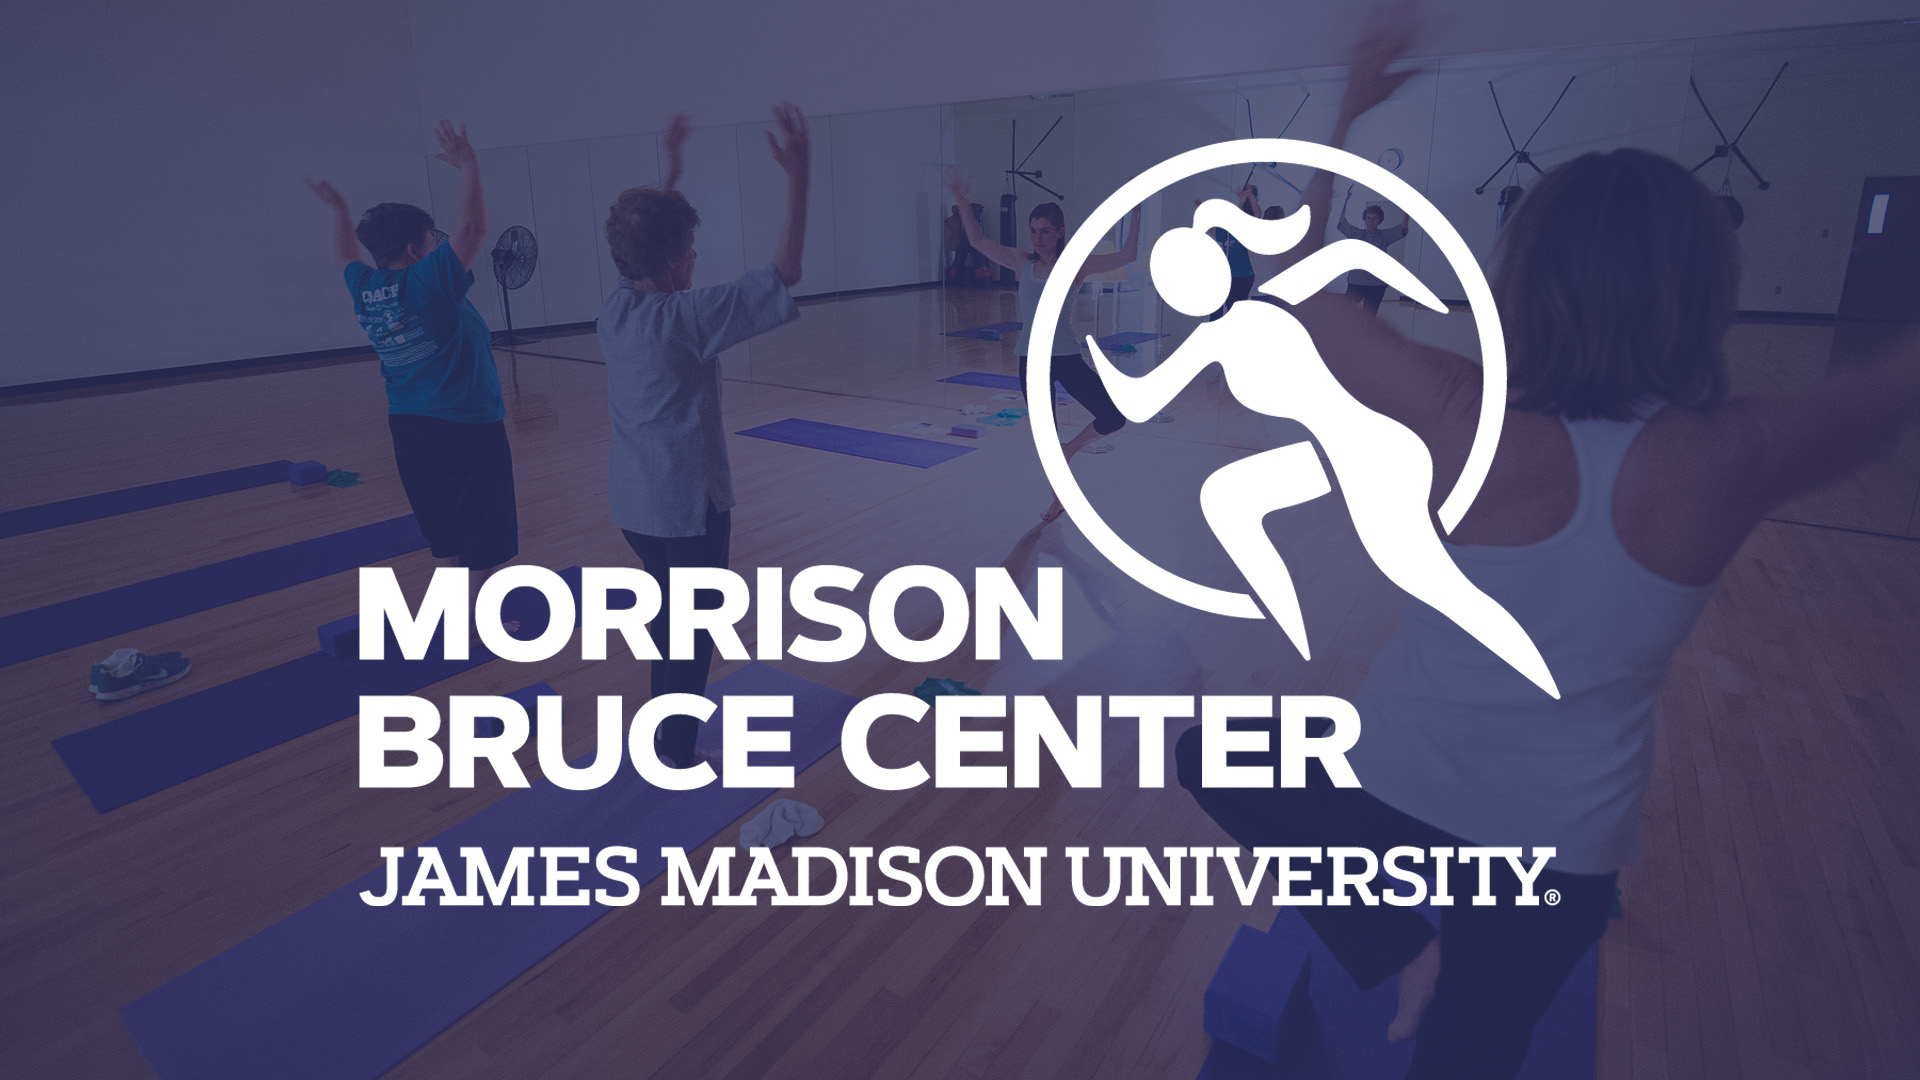 Morrison Bruce Center - Start Here